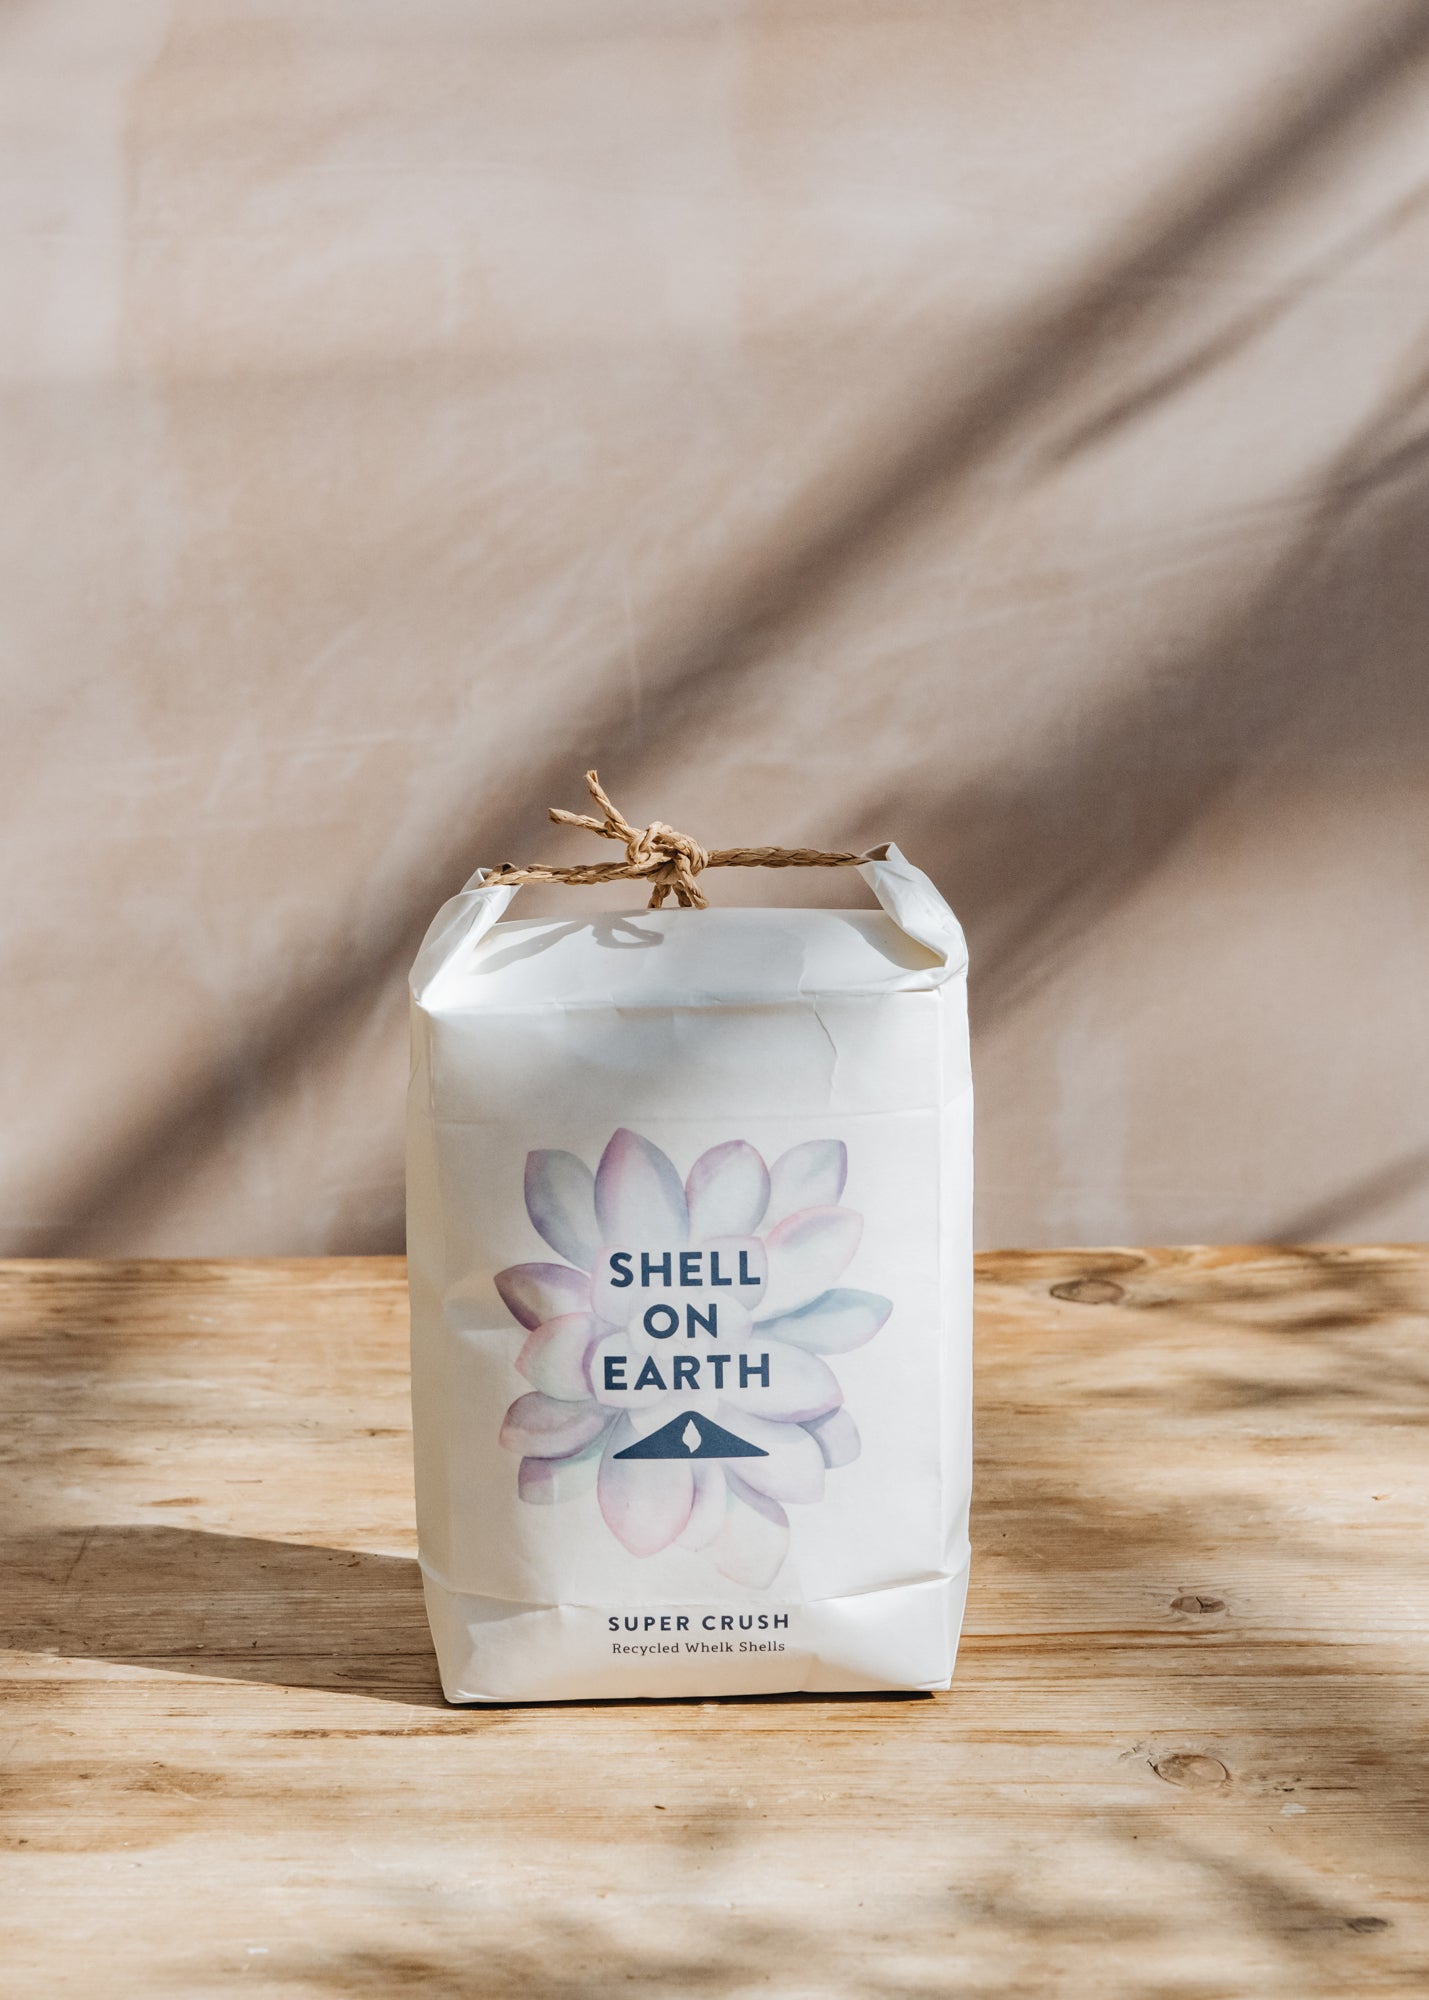 Shell on Earth Super Crush, Crushed Whelk Shells